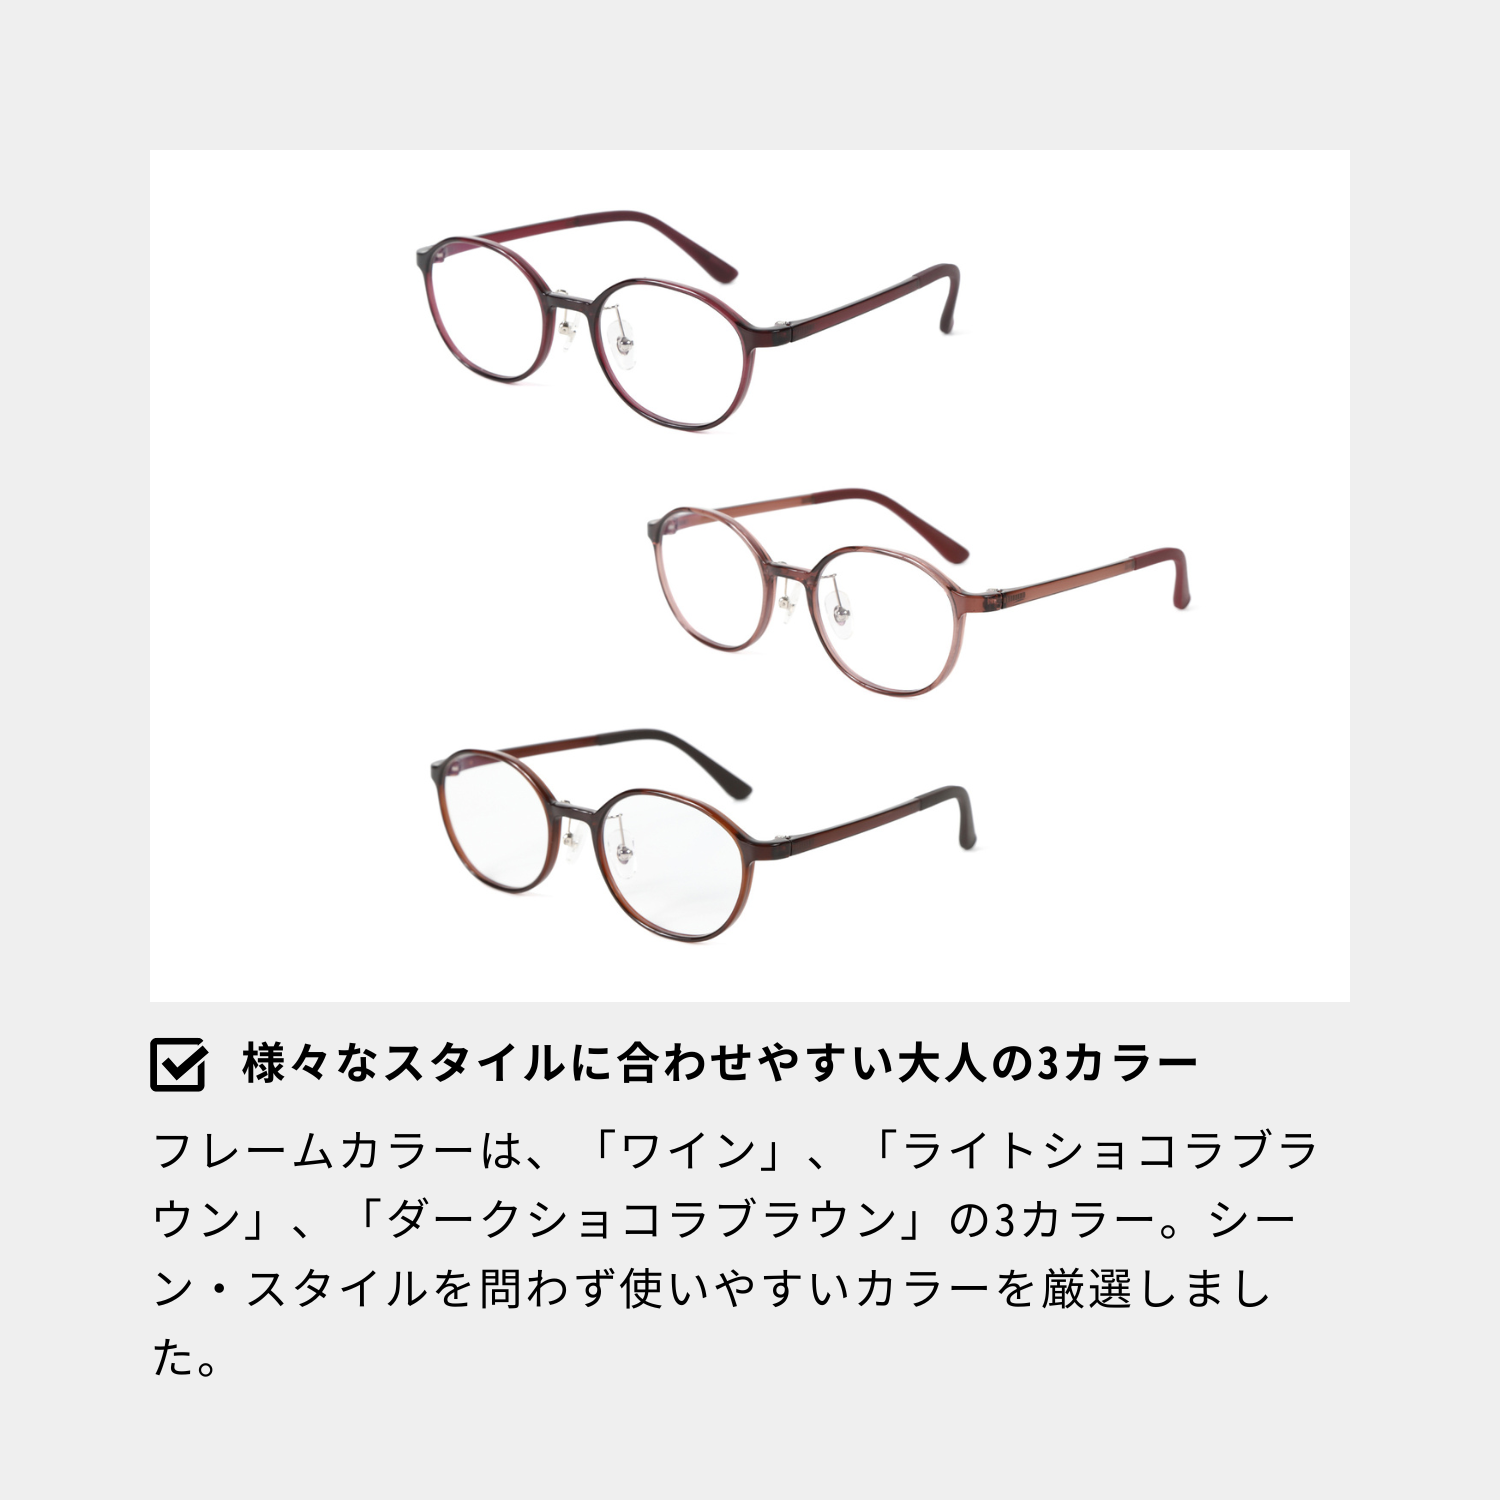 メガネ 度付き レディース おしゃれ 可愛い 眼鏡 度入り 度あり 度付きメガネ 乱視対応 乱視 近視 細い 軽い ズレ防止 メガネ通販 ブランド  YUAZ504NS